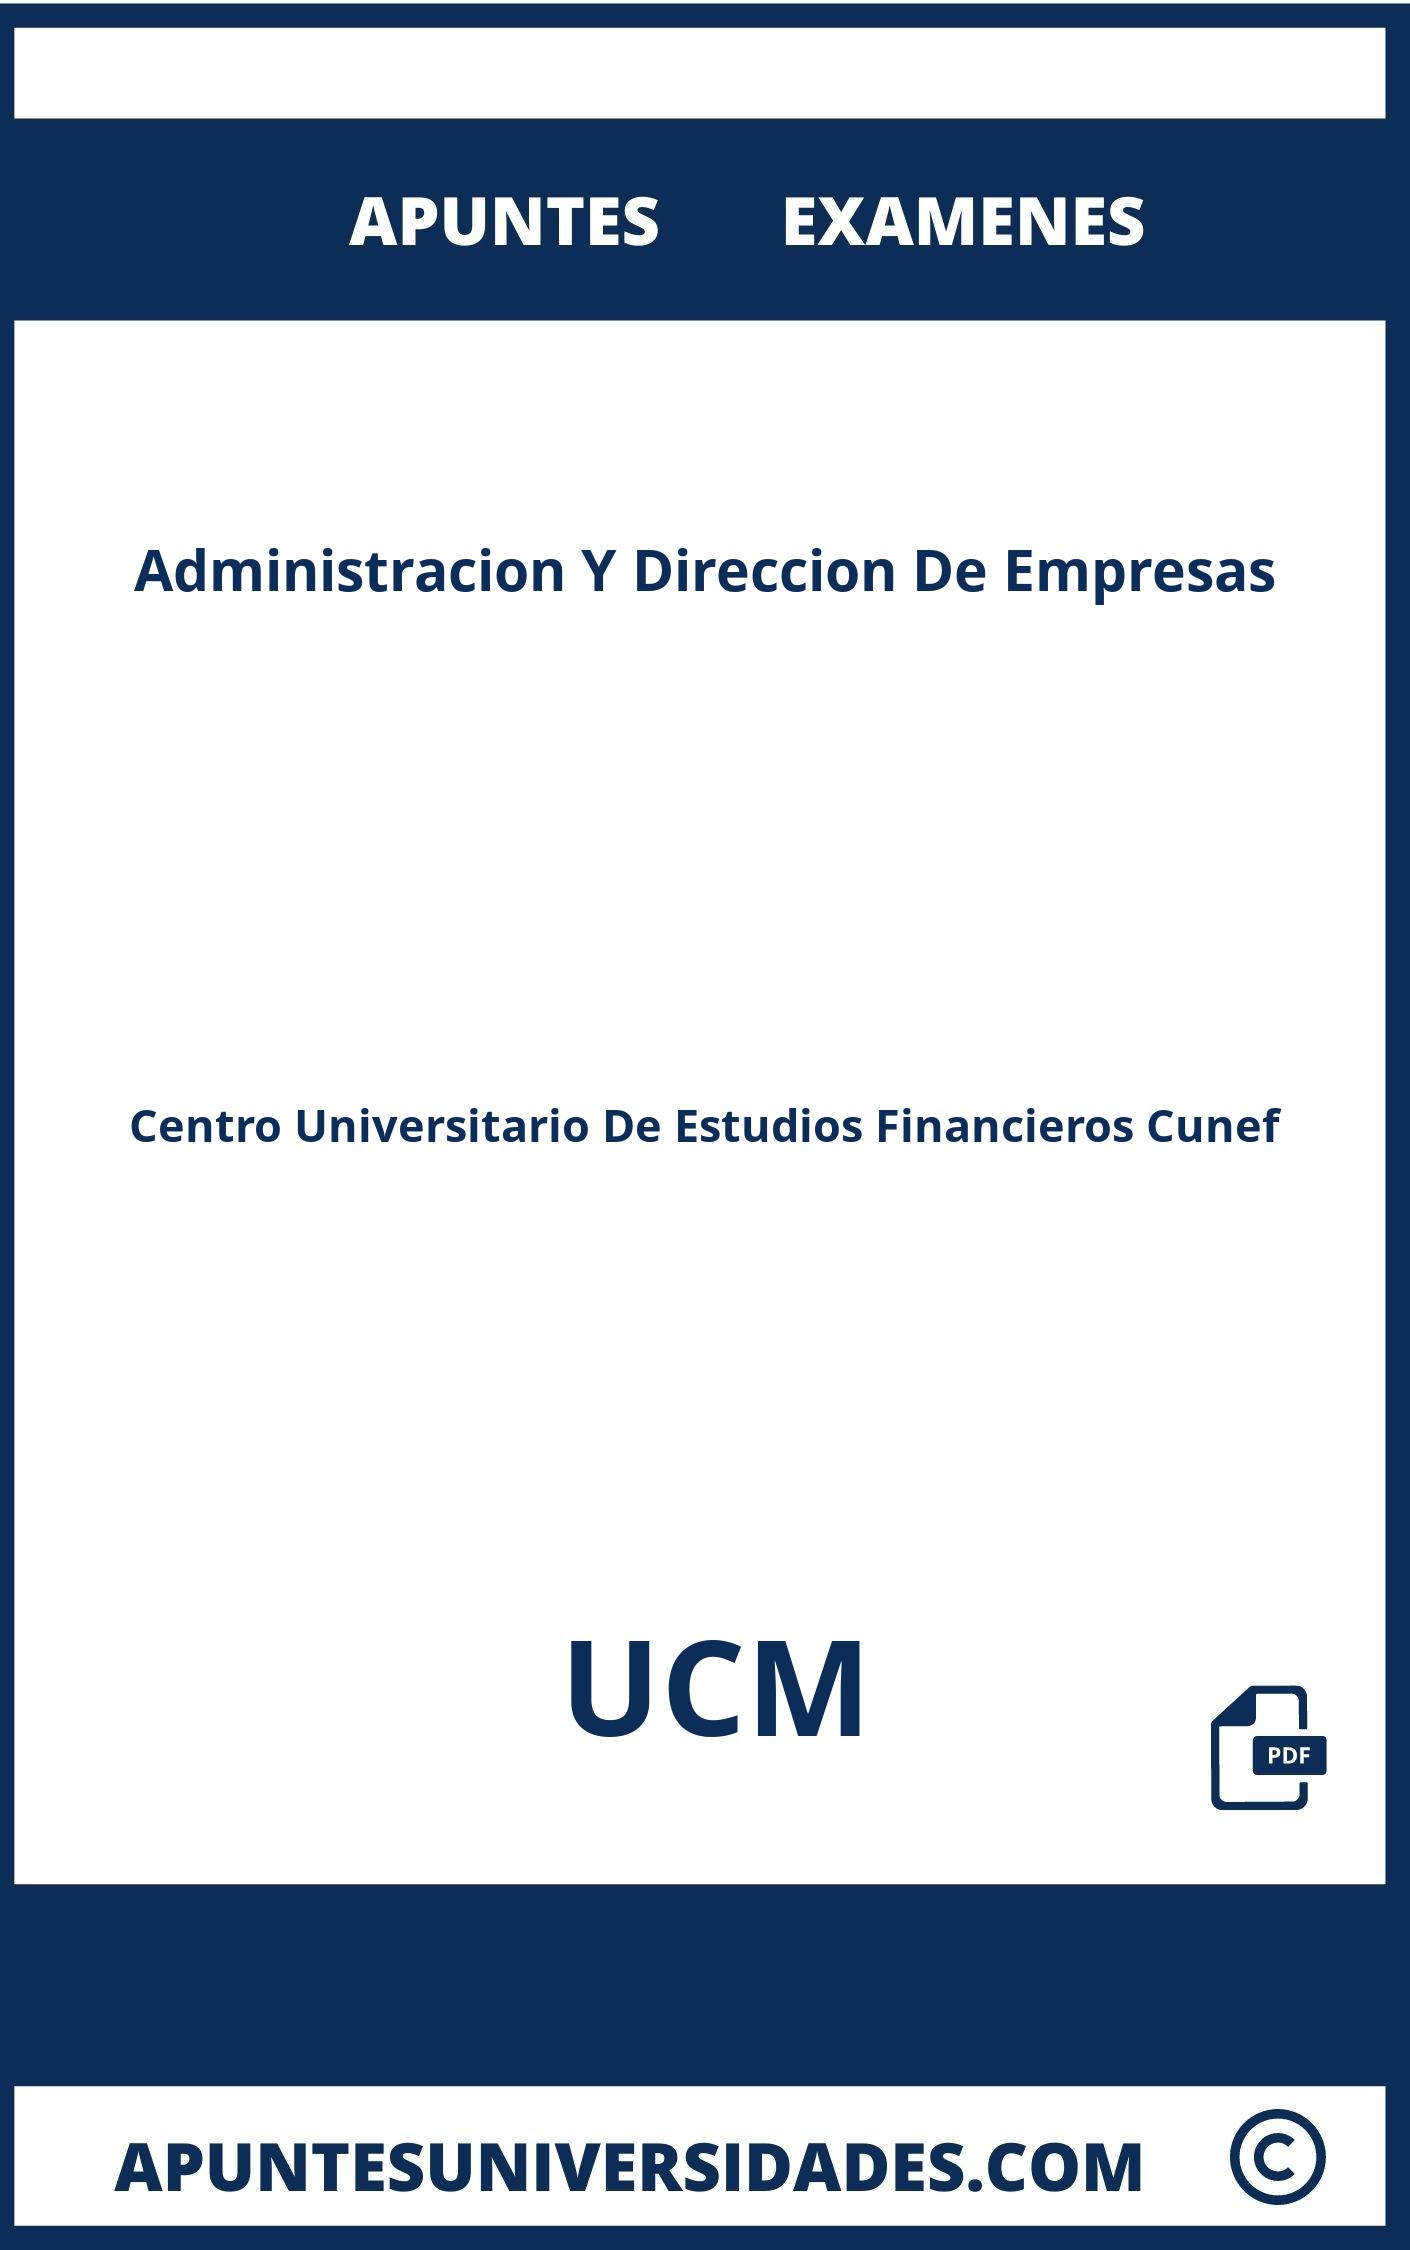 Examenes y Apuntes de Administracion Y Direccion De Empresas UCM